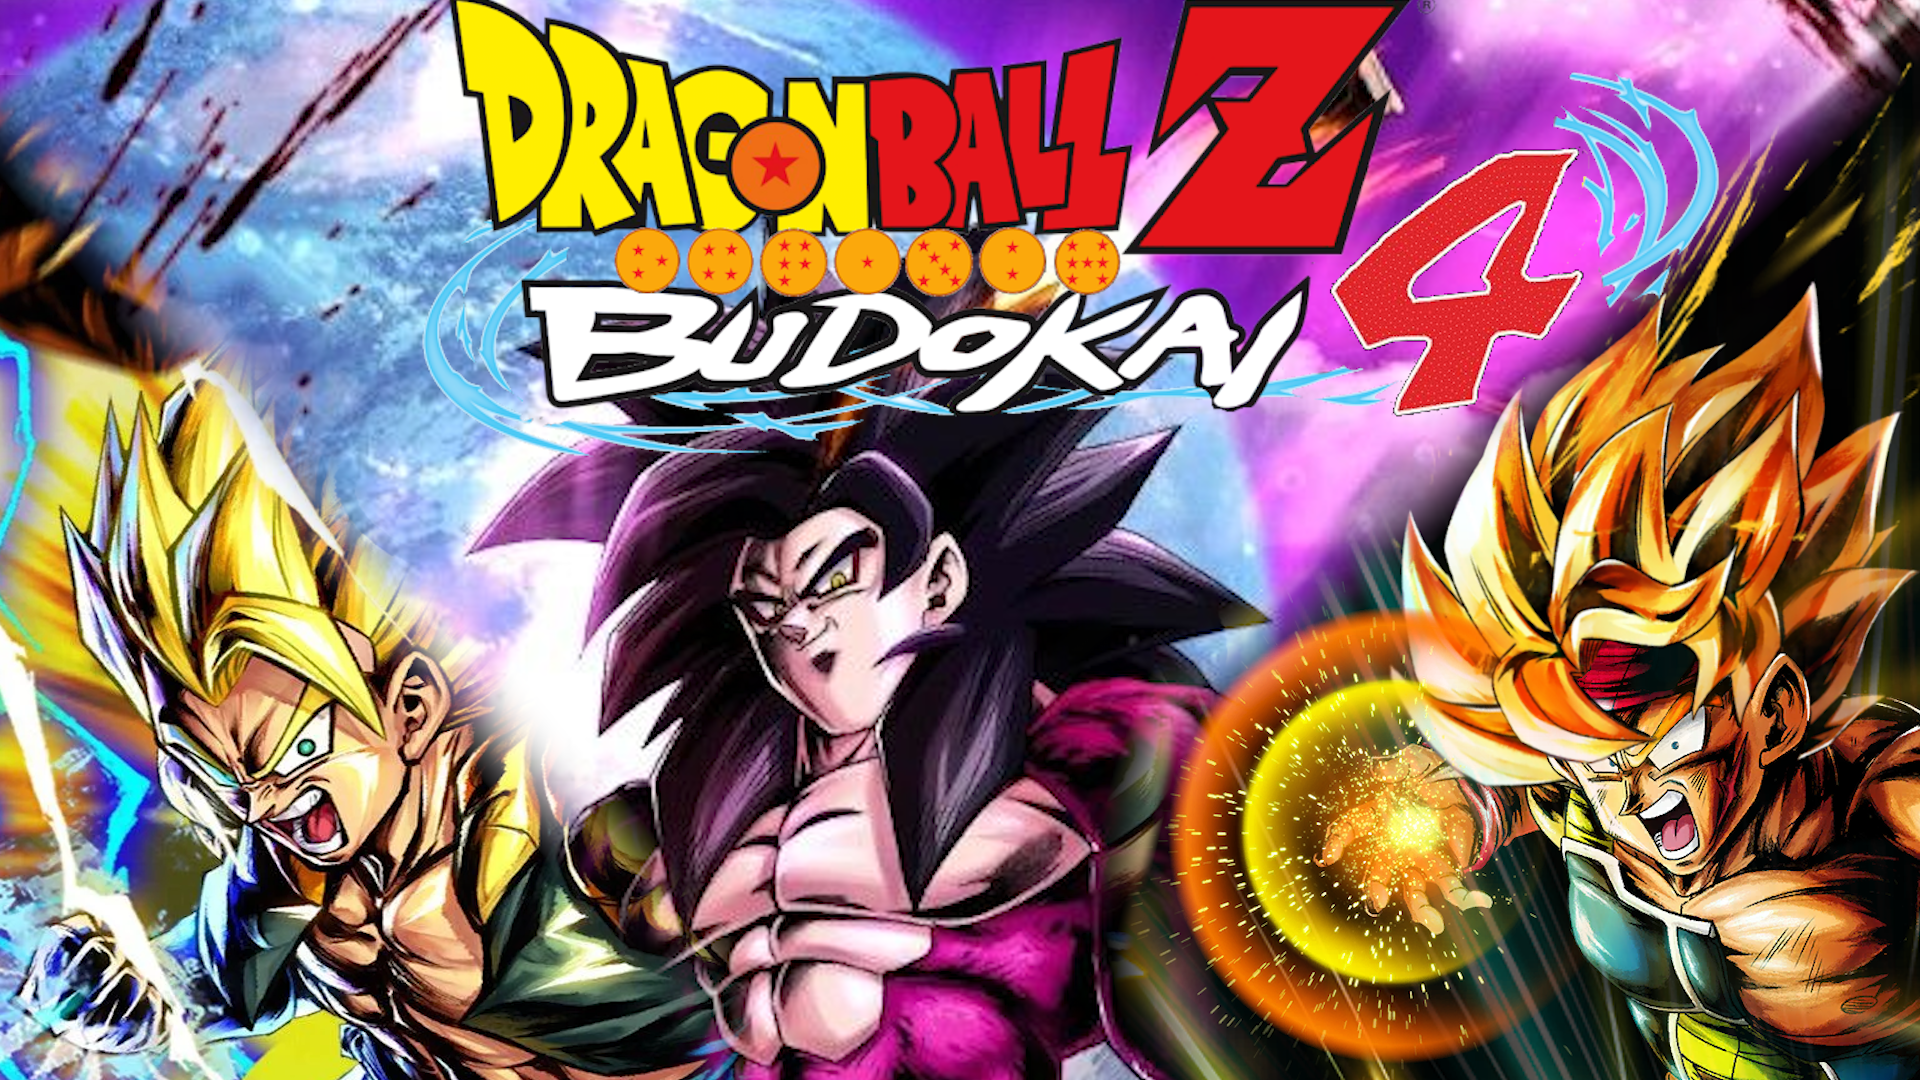 Dragon Ball Z Budokai Tenkaichi 4 - Download game PS3 PS4 PS2 RPCS3 PC free